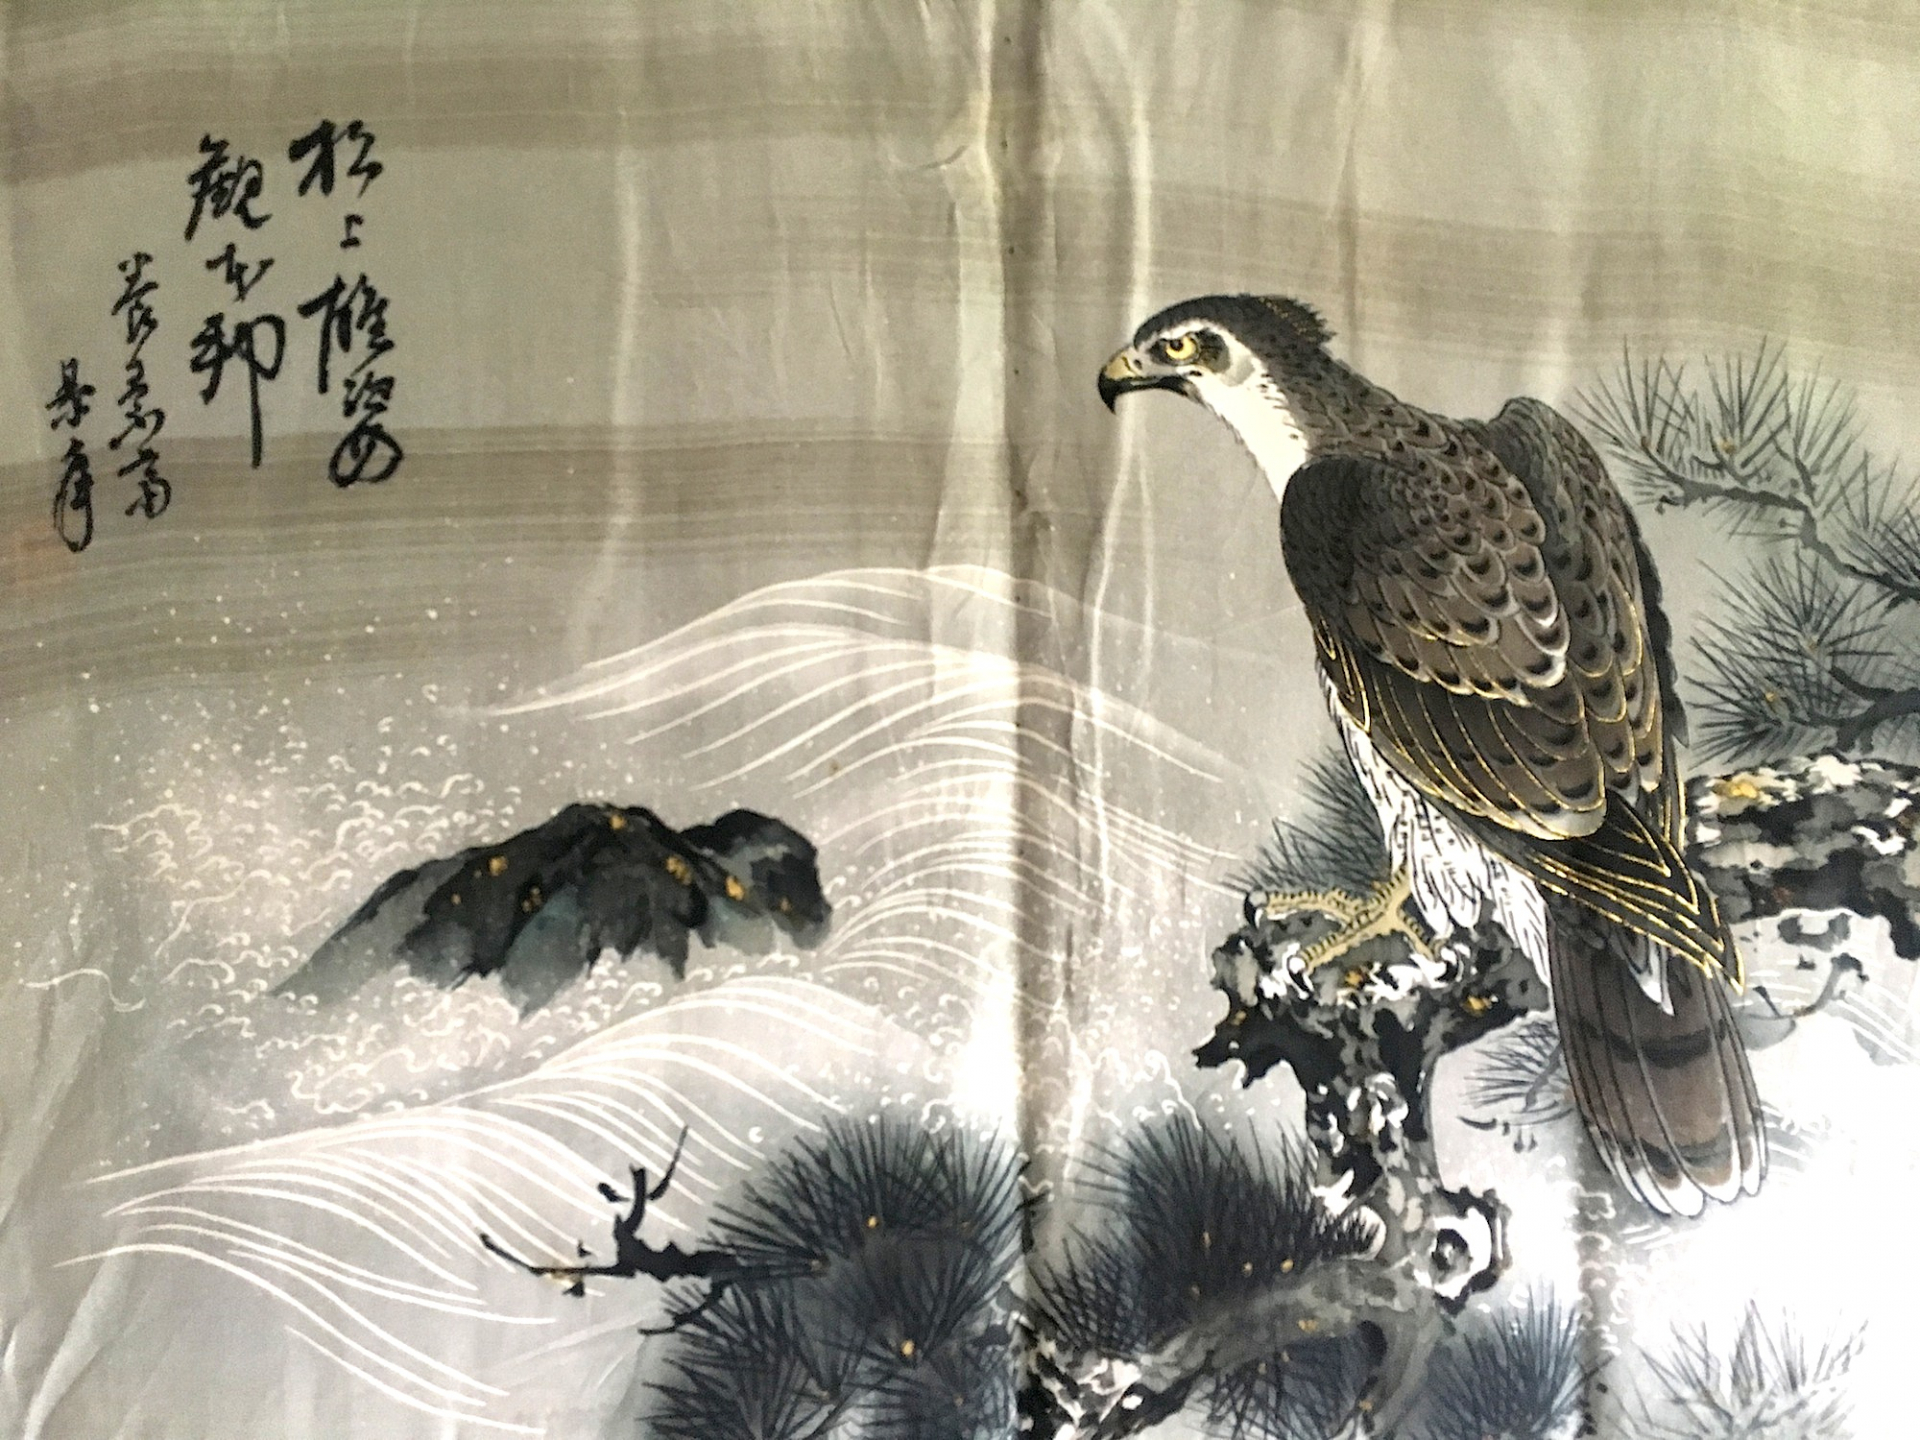 peint à la main sur la doublure représente un majestueux Faucon (symbole de pouvoir et liberté) posé sur une branche d'u pin japonais, en admiration face au courant de la rivière.